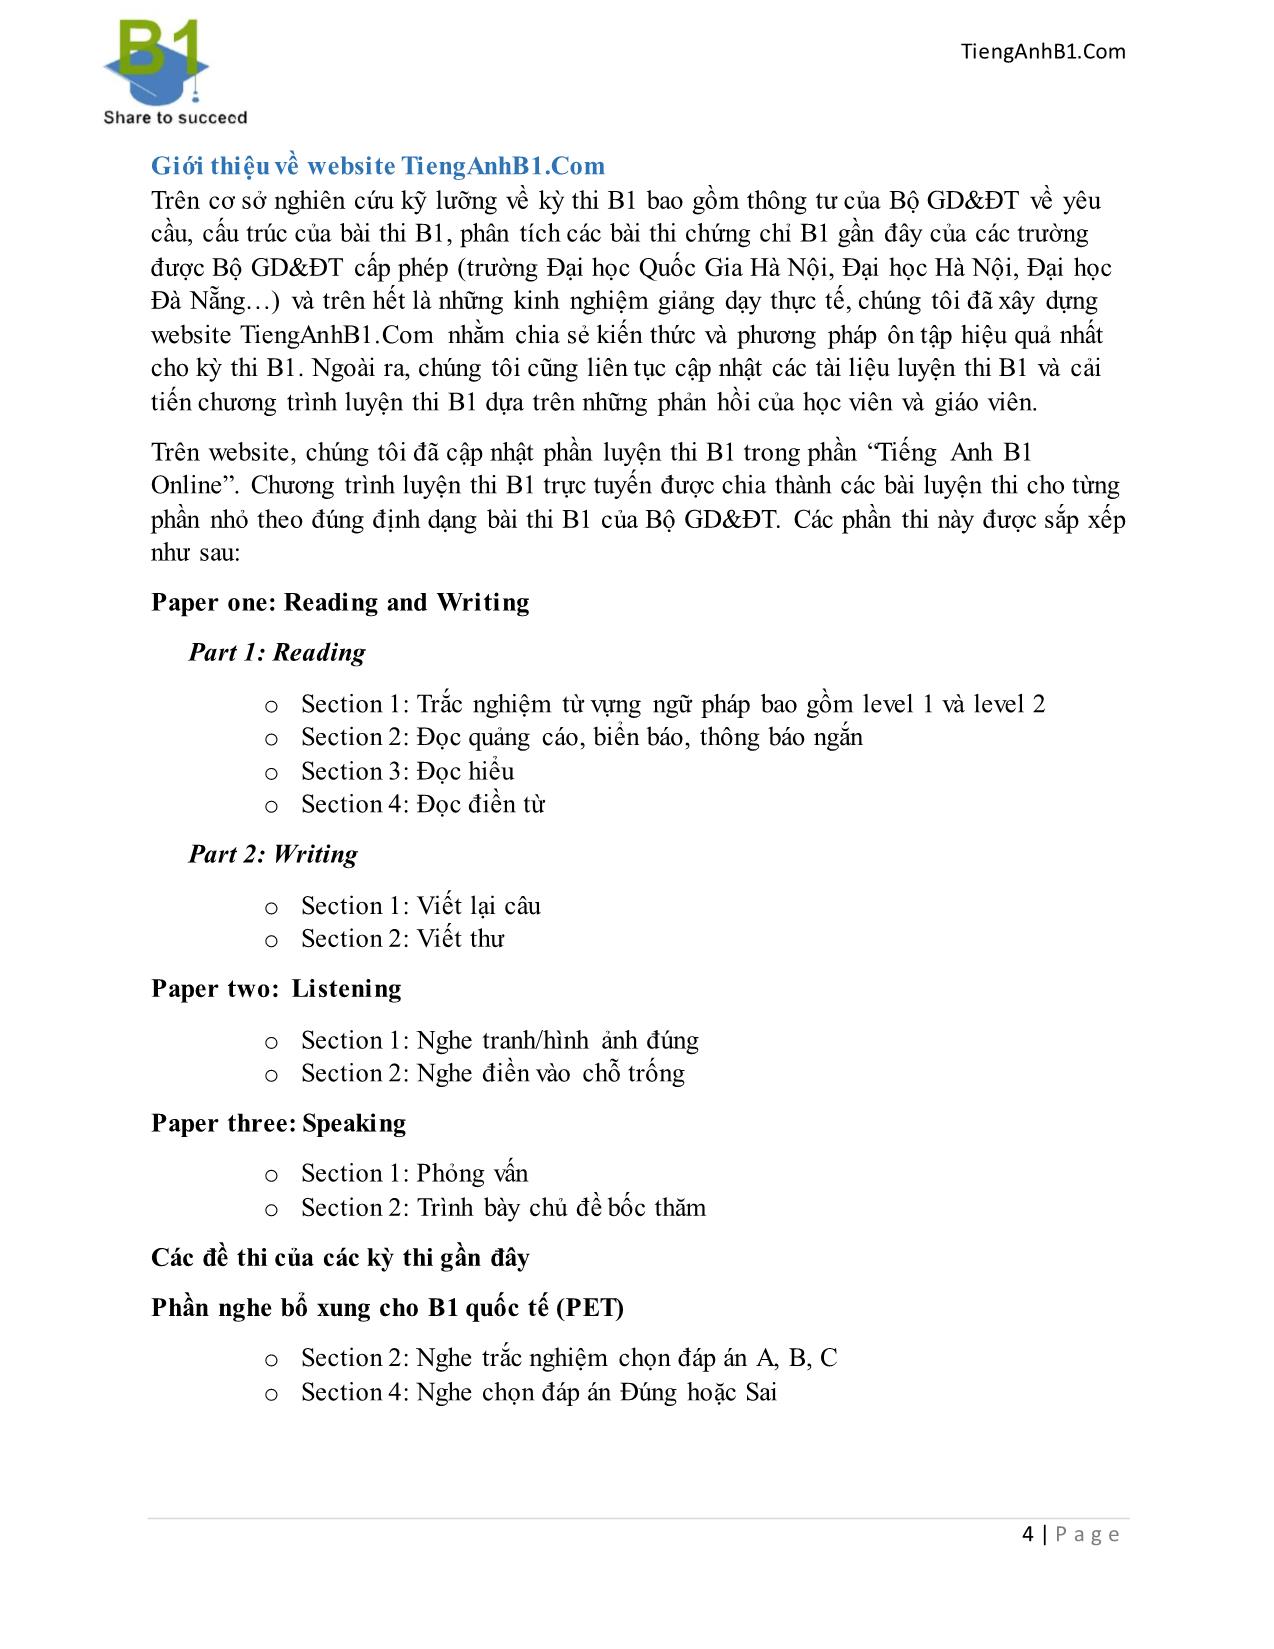 Cẩm nang luyện thi chứng chỉ tiếng Anh B1 trang 4